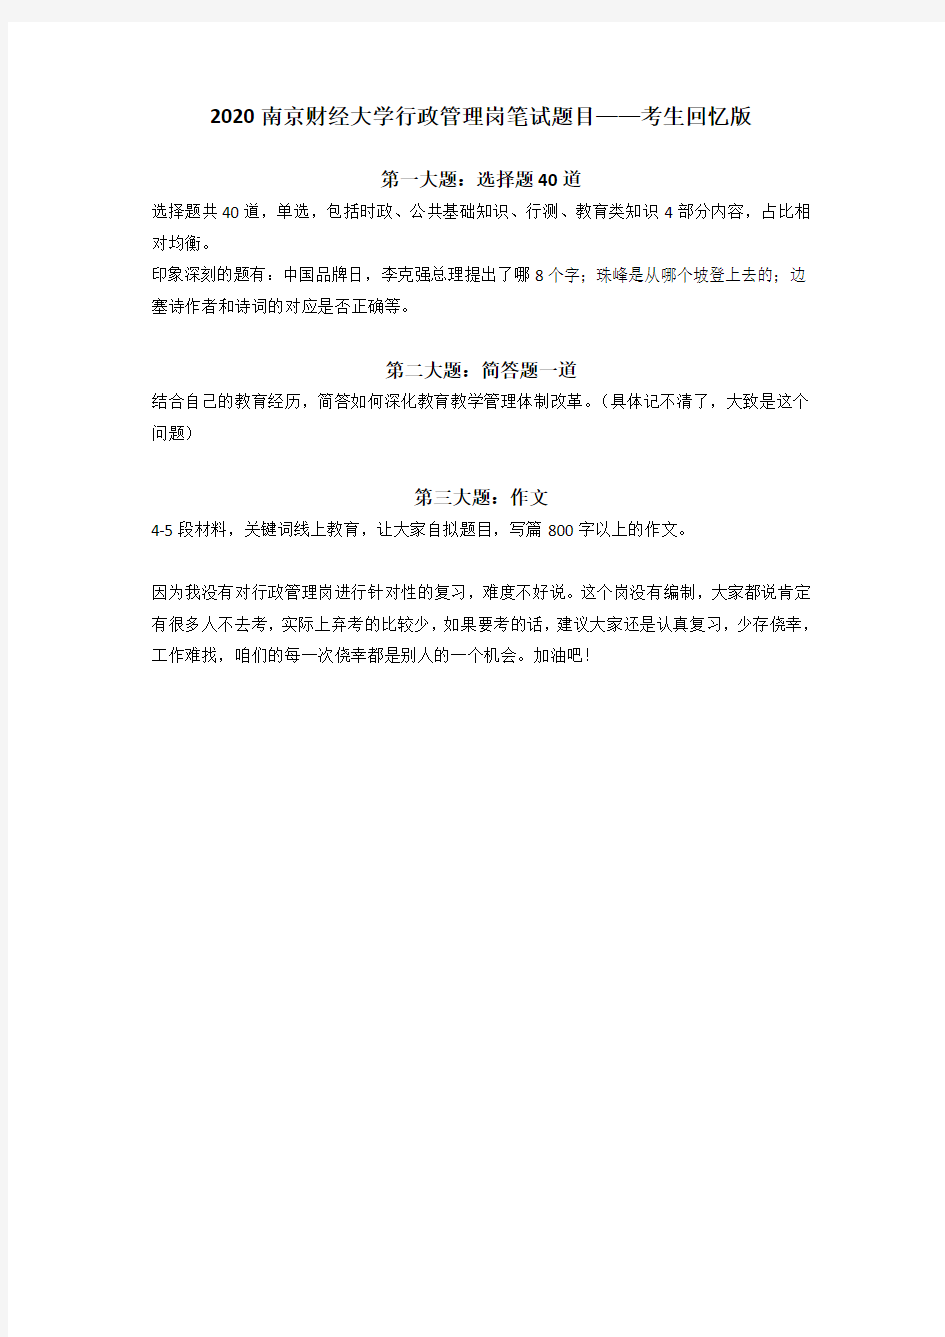 2020南京财经大学行政管理岗笔试题目-考生回忆版